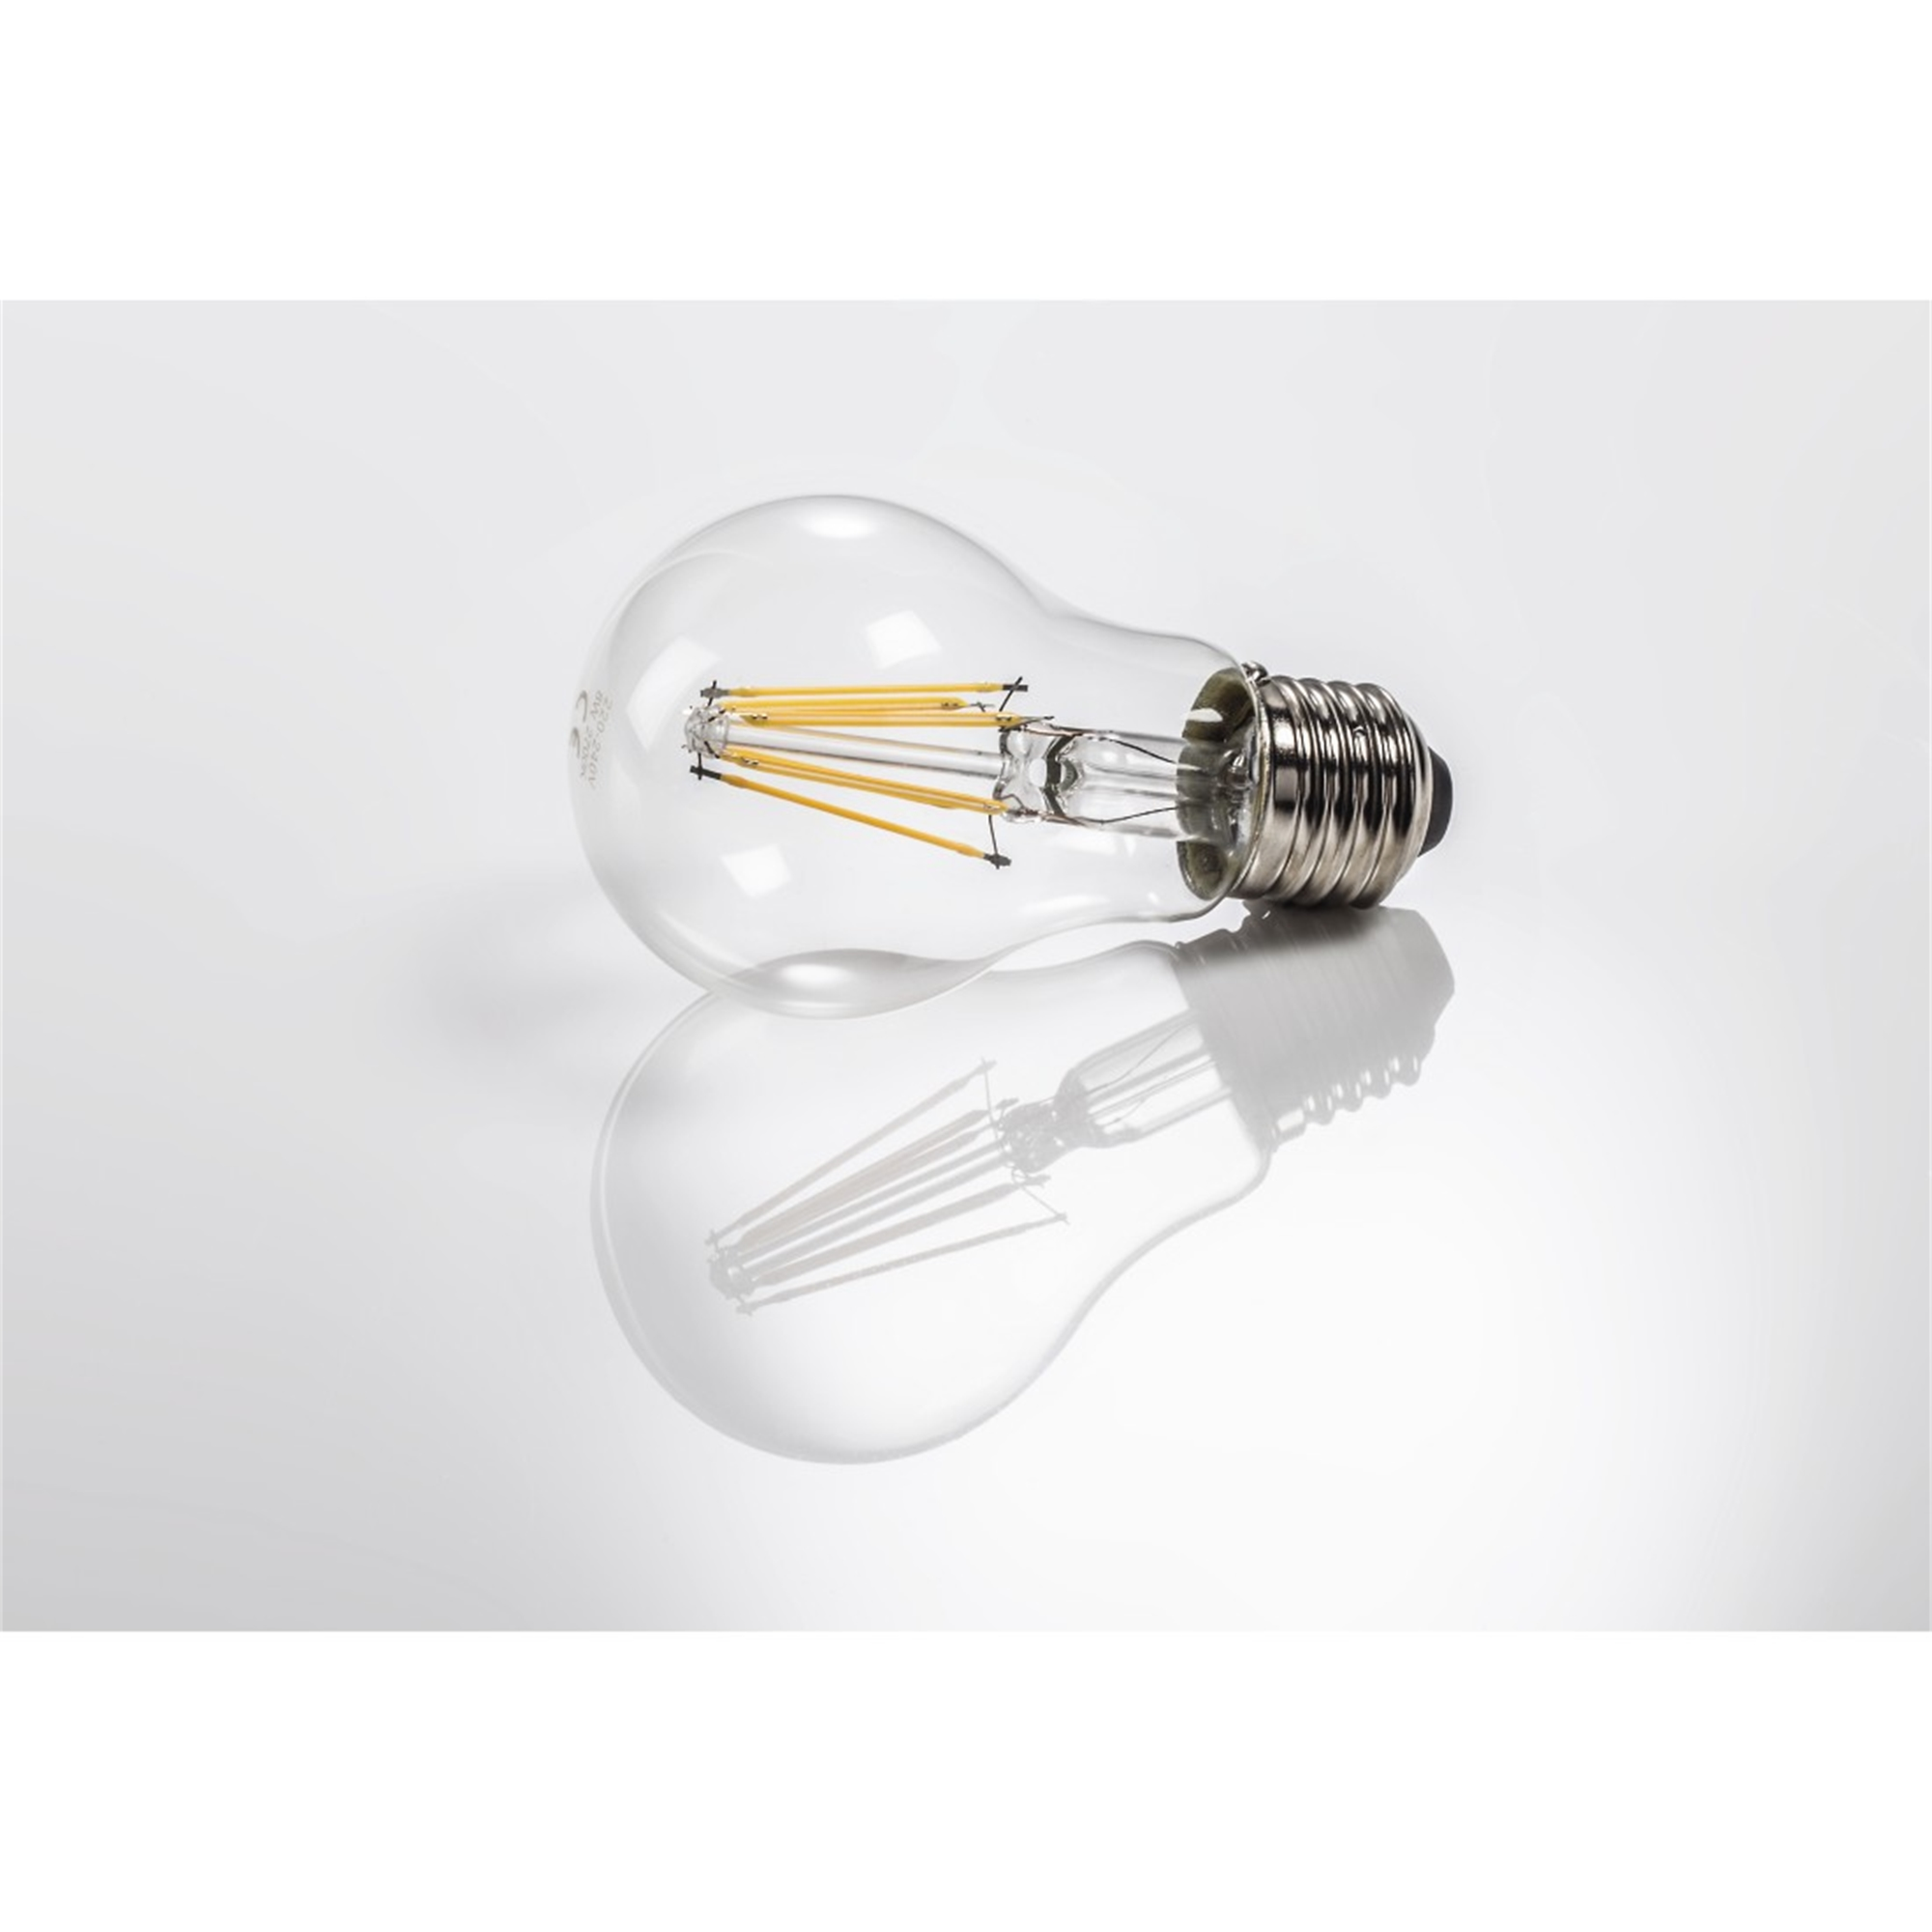 Warmweiß XAVAX ersetzt LED-Lampe E27, 75W E27 1055lm